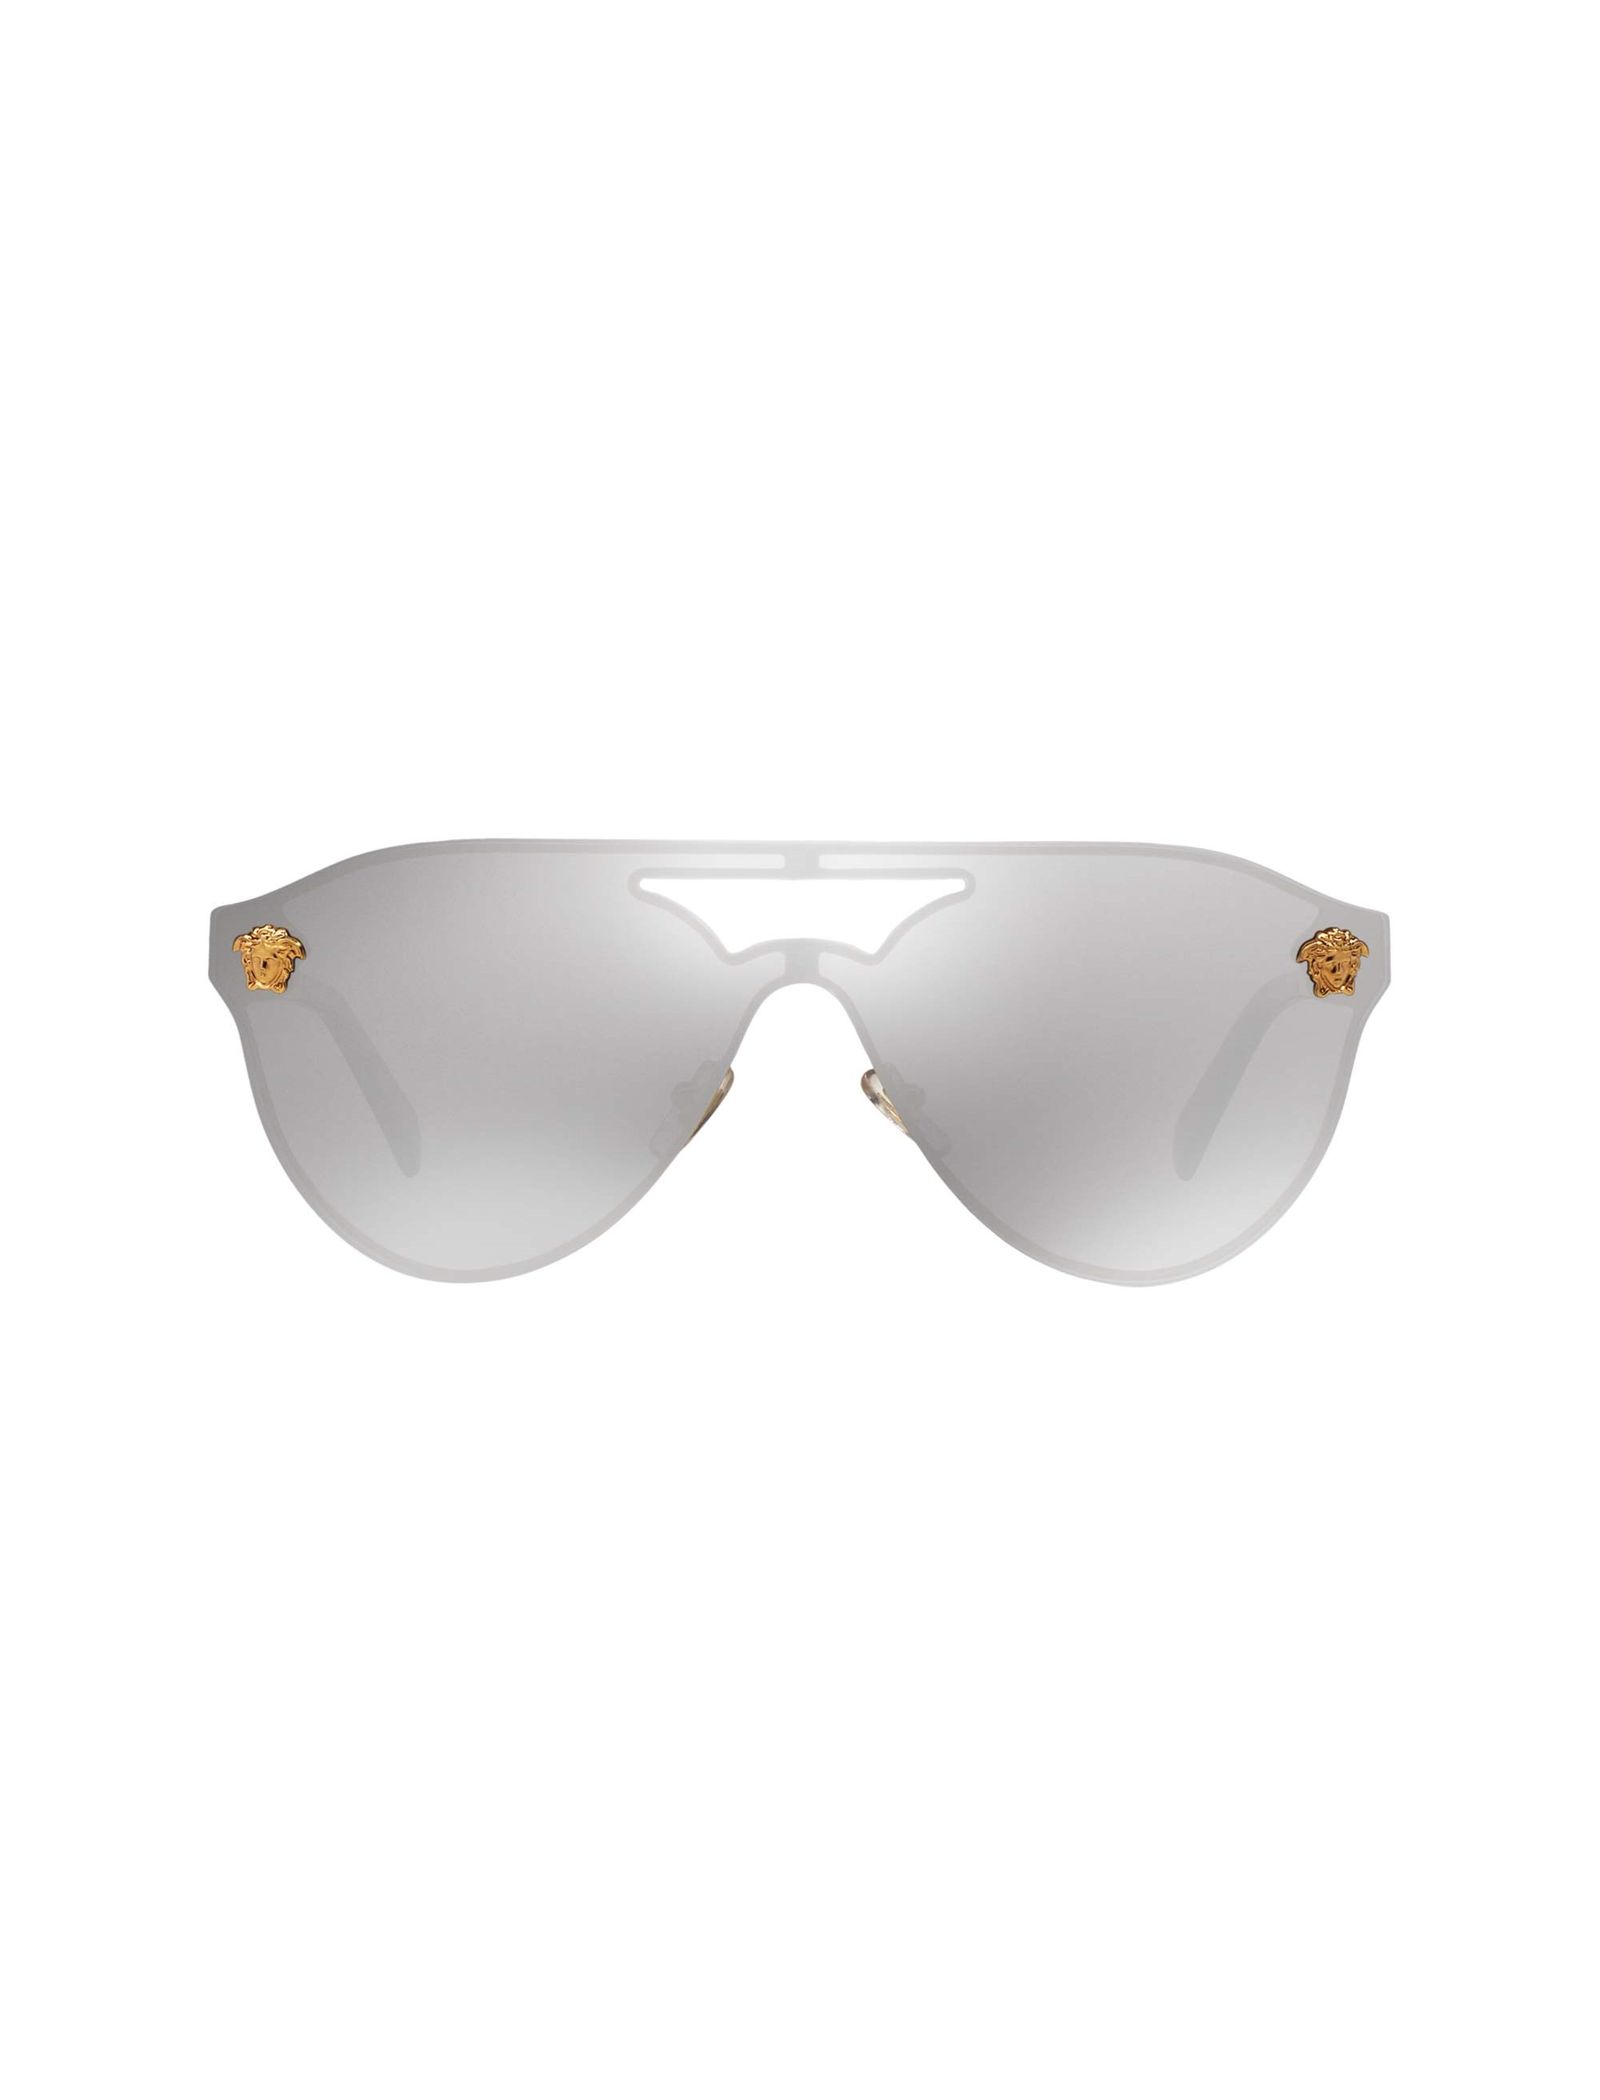 عینک آفتابی خلبانی زنانه - ورساچه - طلايي - 1